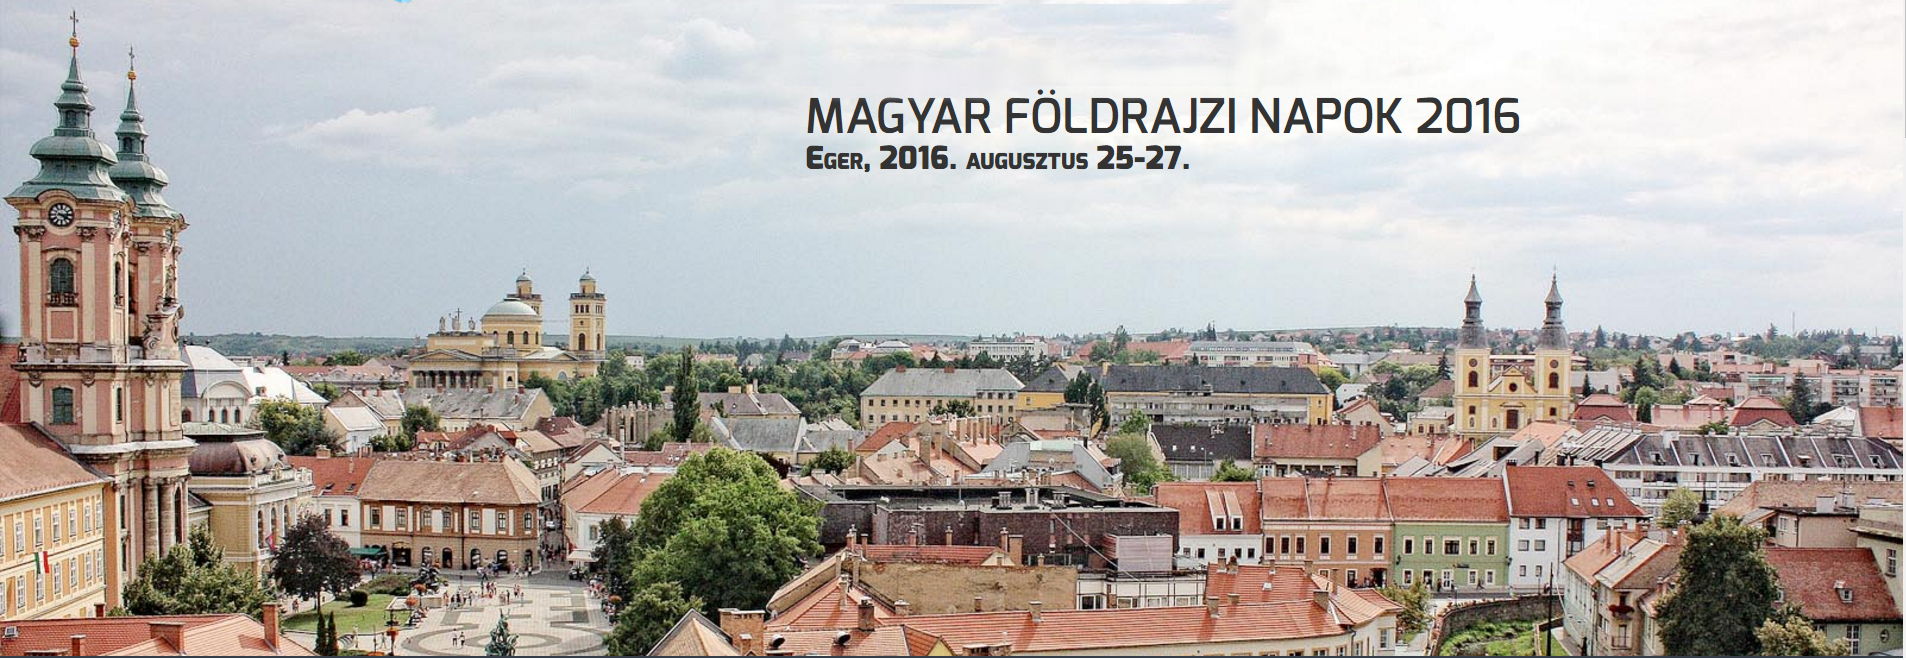 Megkezdődött az I. Magyar Földrajzi Napok rendezvénysorozata Egerben